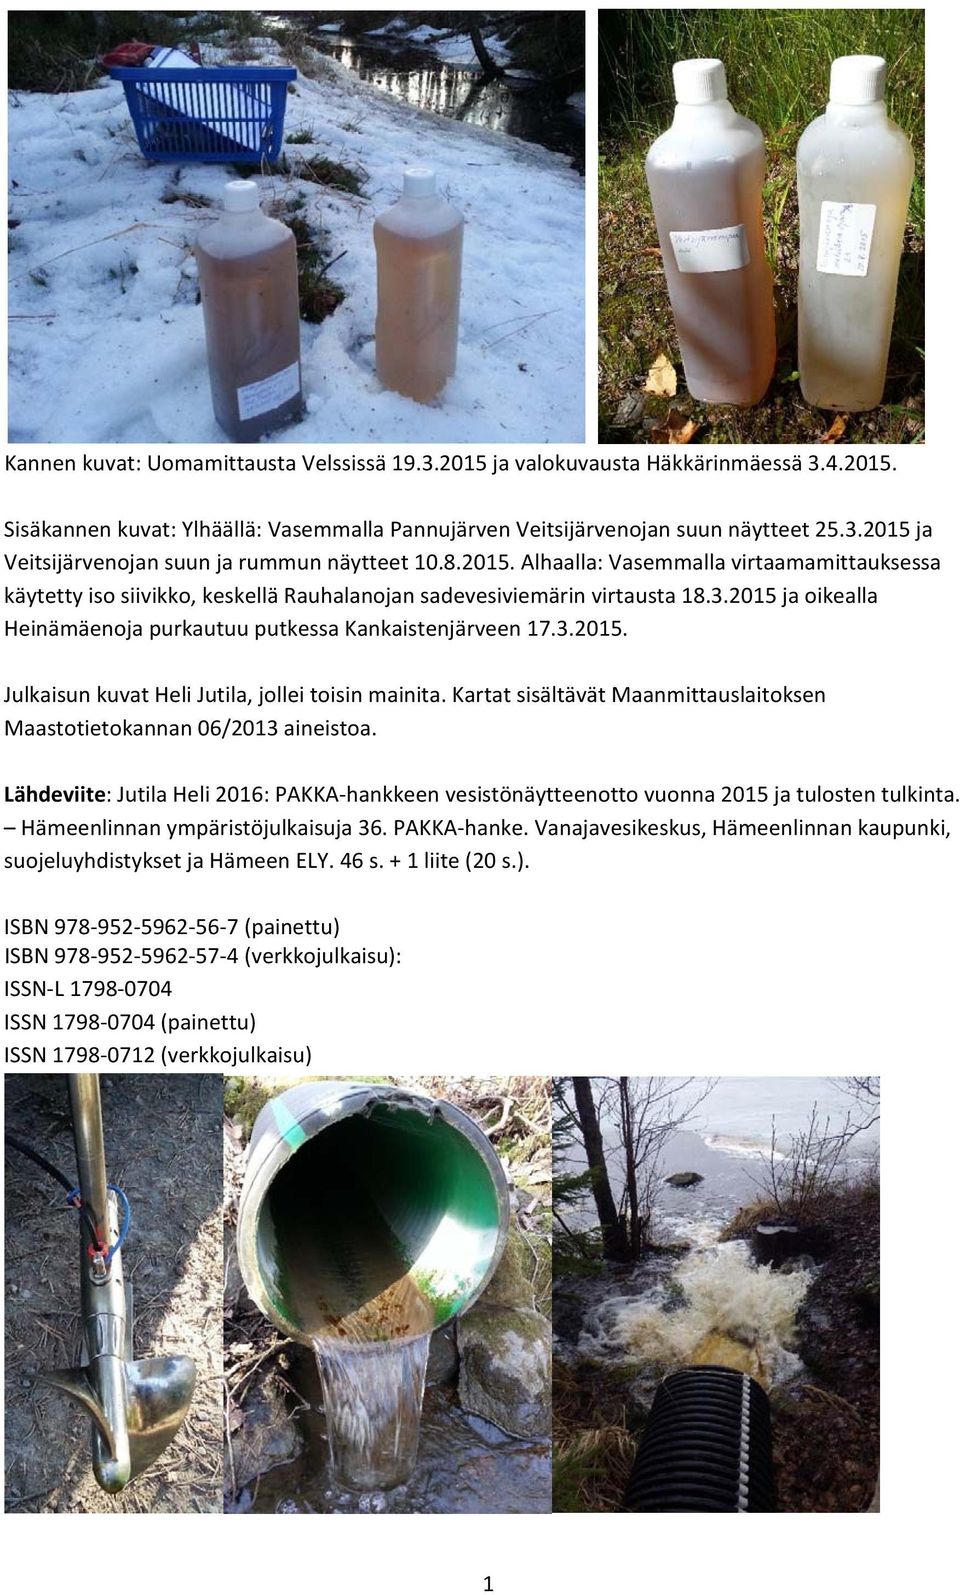 Kartat sisältävät Maanmittauslaitoksen Maastotietokannan 06/2013 aineistoa. Lähdeviite: Jutila Heli 2016: PAKKA hankkeen vesistönäytteenotto vuonna 2015 ja tulosten tulkinta.